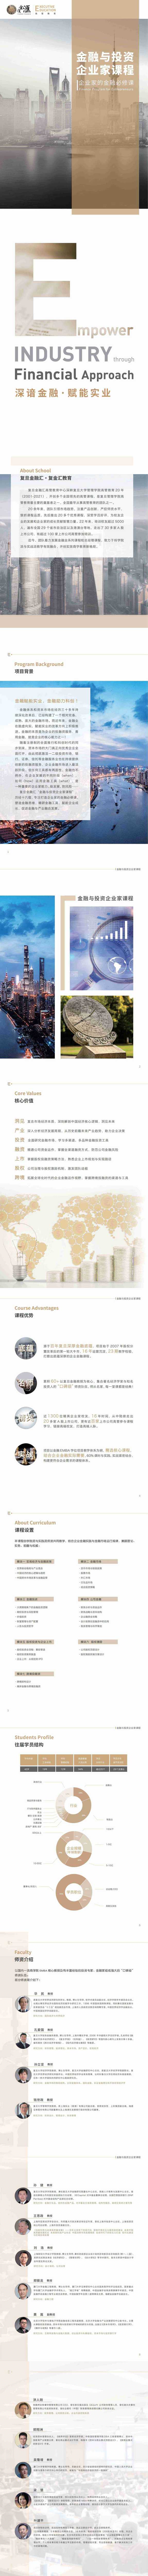 金融与投资企业家课程招生简章（第24期）_00.jpg